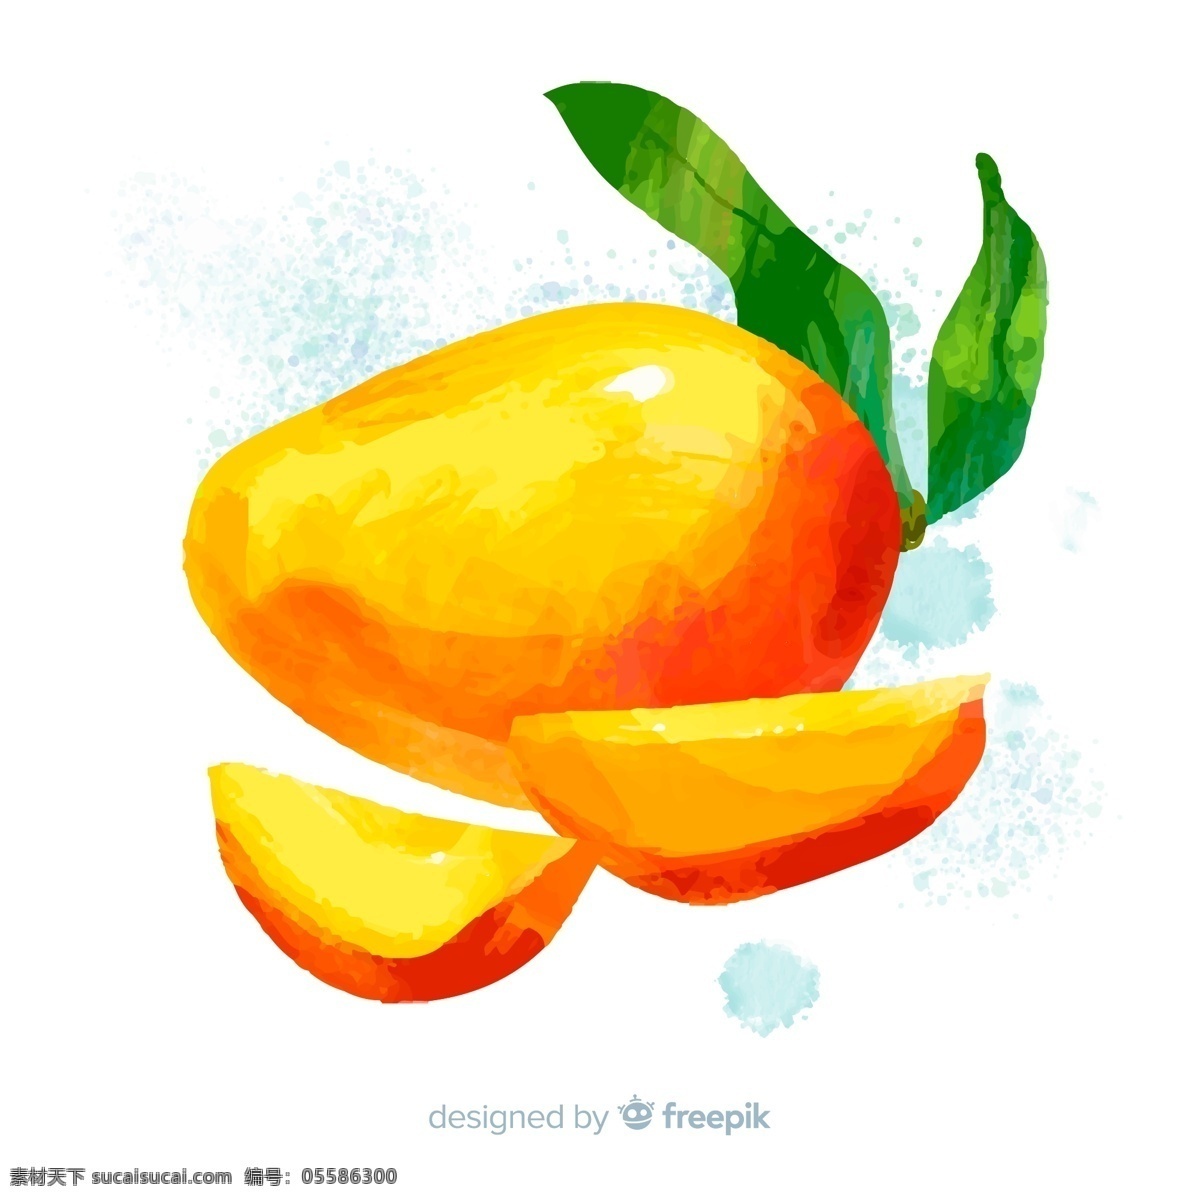 手绘 芒果 橘黄色 水果 水彩 绘画 美味 泰芒 热带水果 生物世界